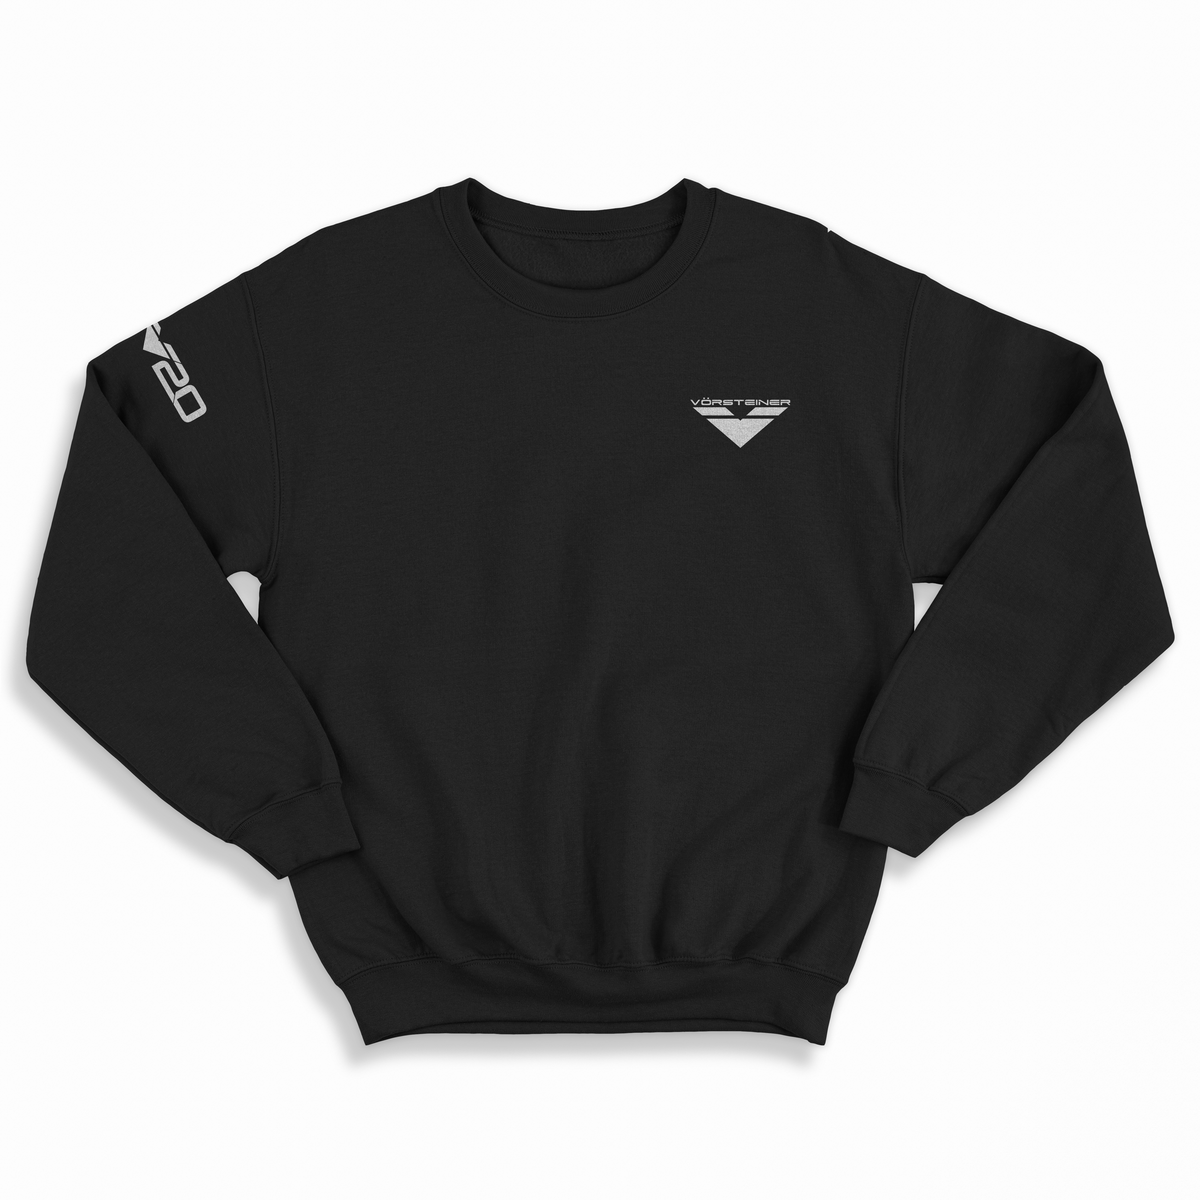 Vorsteiner V20 Sweater - Vorsteiner Wheels  - Apparel & Accessories - [tags]